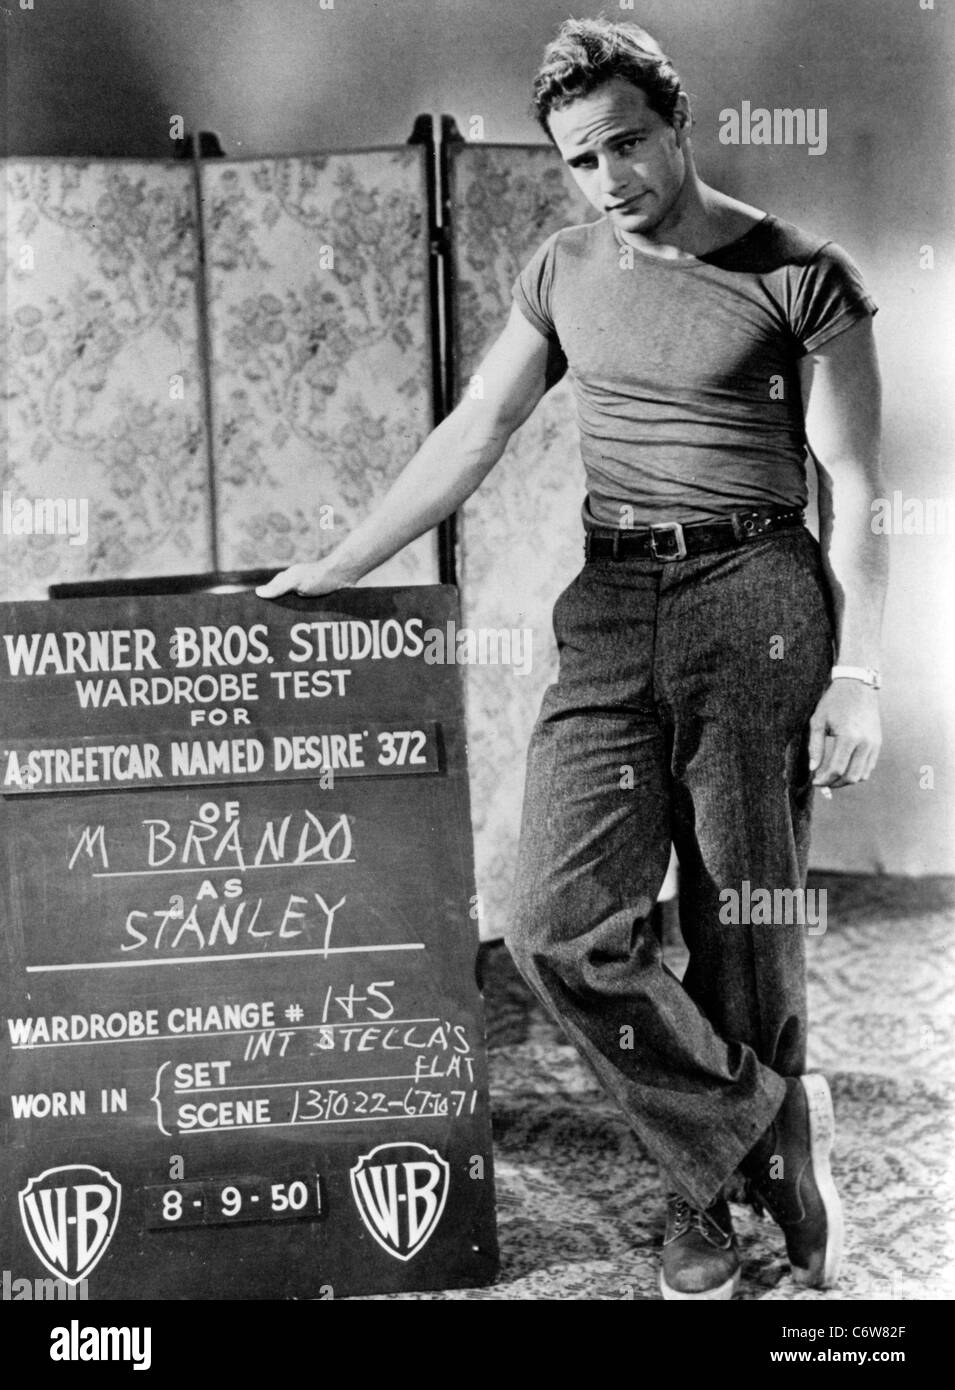 MARLON BRANDO acteur de film nous faisant une armoire test pour Un tramway nommé désir en 1950 Banque D'Images